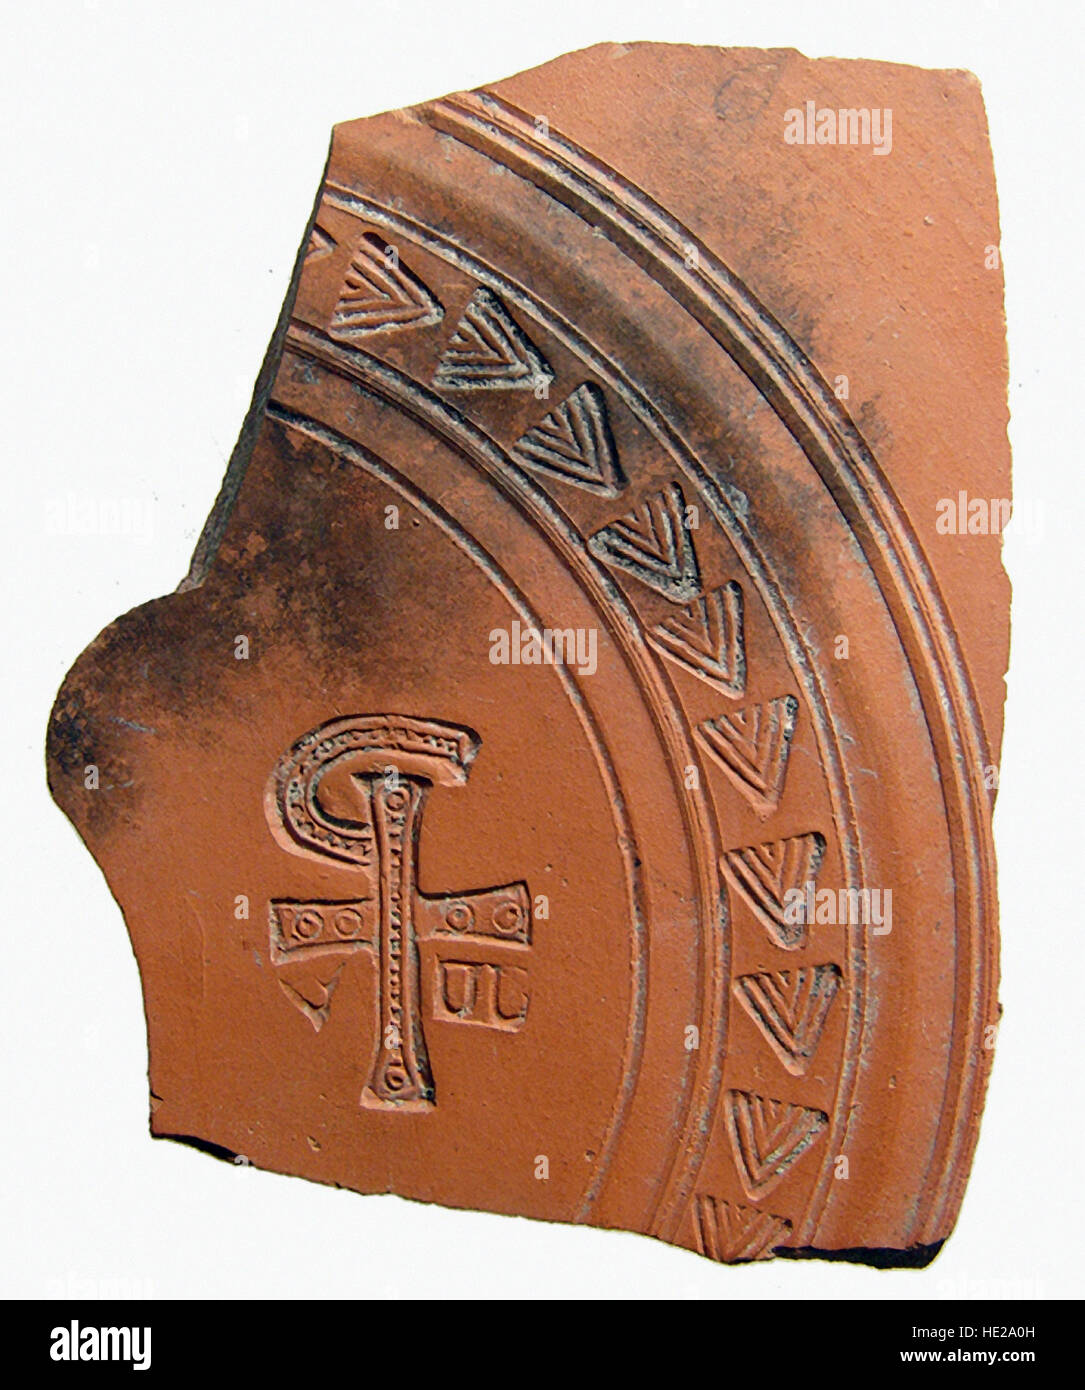 6017. Roman (Afrique du Nord) tesson de poterie représentant le 'chi rho', une combinaison de lettres qui forme une abréviation pour le nom de Jésus Christ, c. Banque D'Images